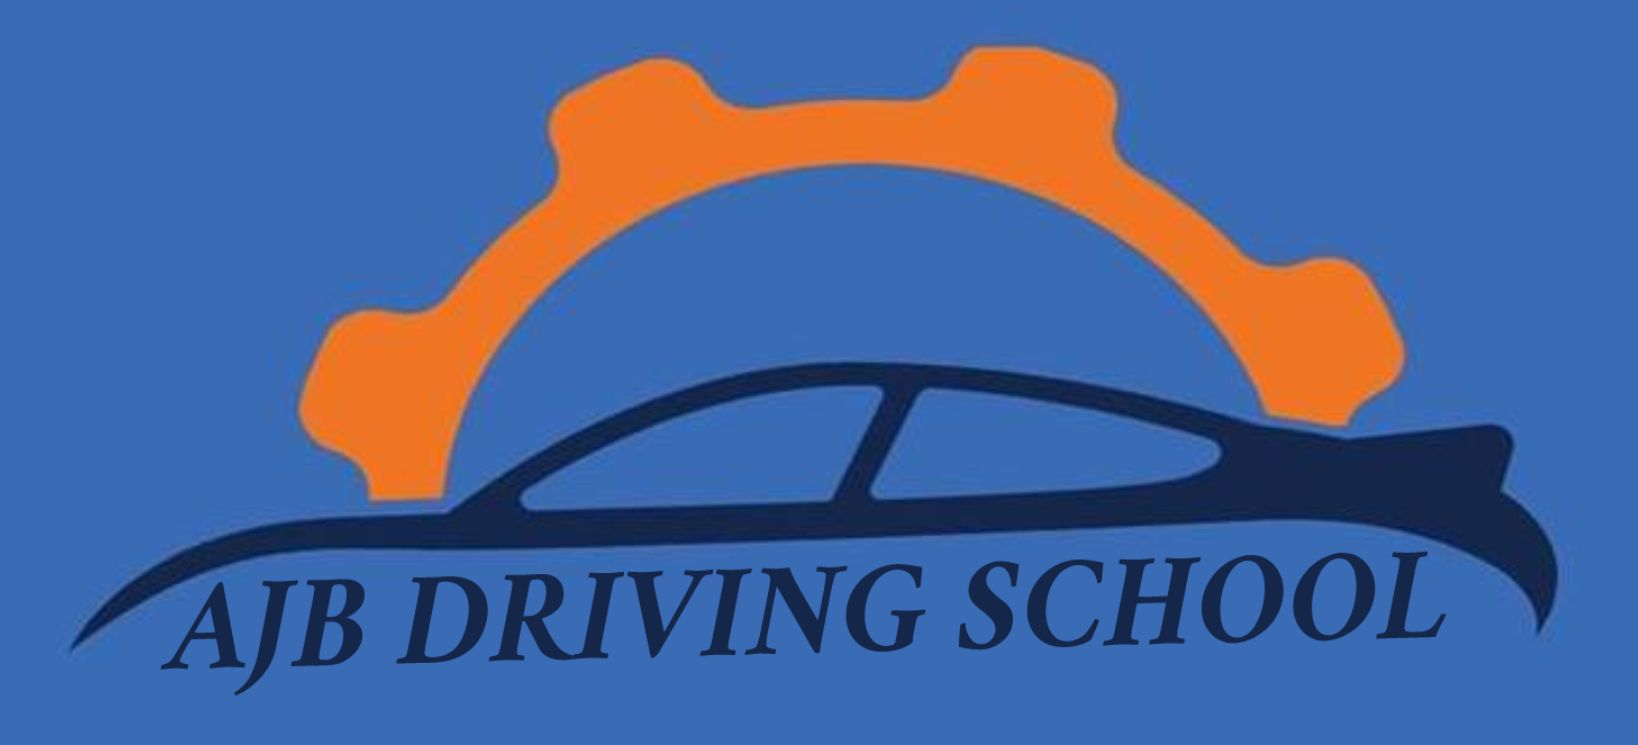 AJB Driving School